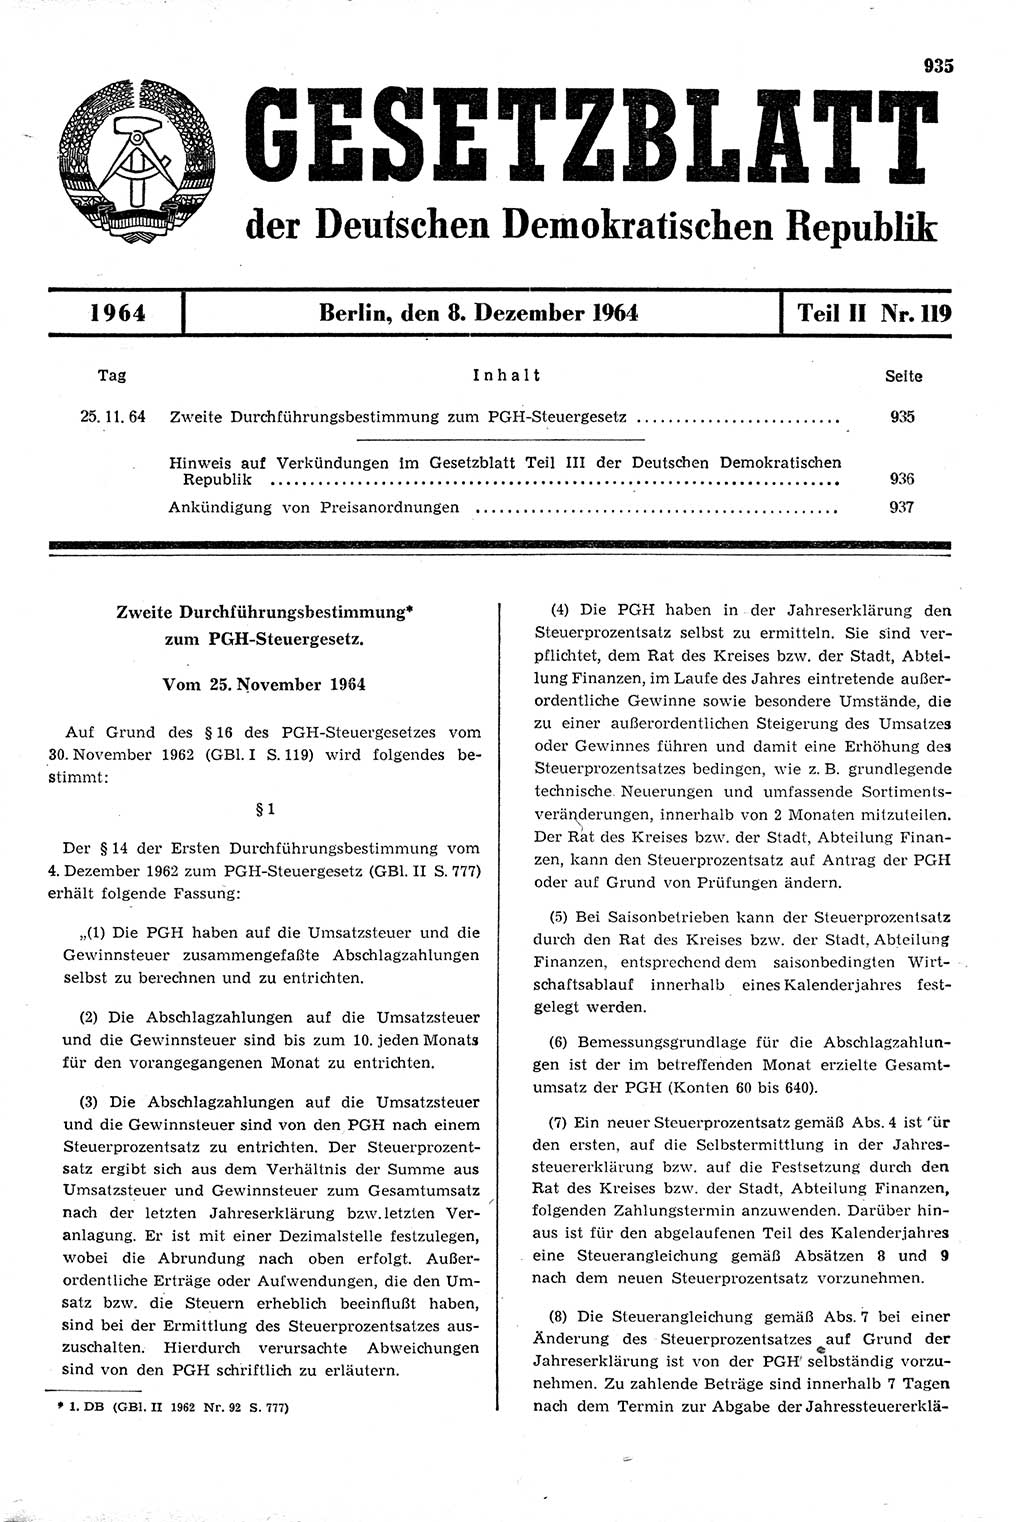 Gesetzblatt (GBl.) der Deutschen Demokratischen Republik (DDR) Teil ⅠⅠ 1964, Seite 935 (GBl. DDR ⅠⅠ 1964, S. 935)